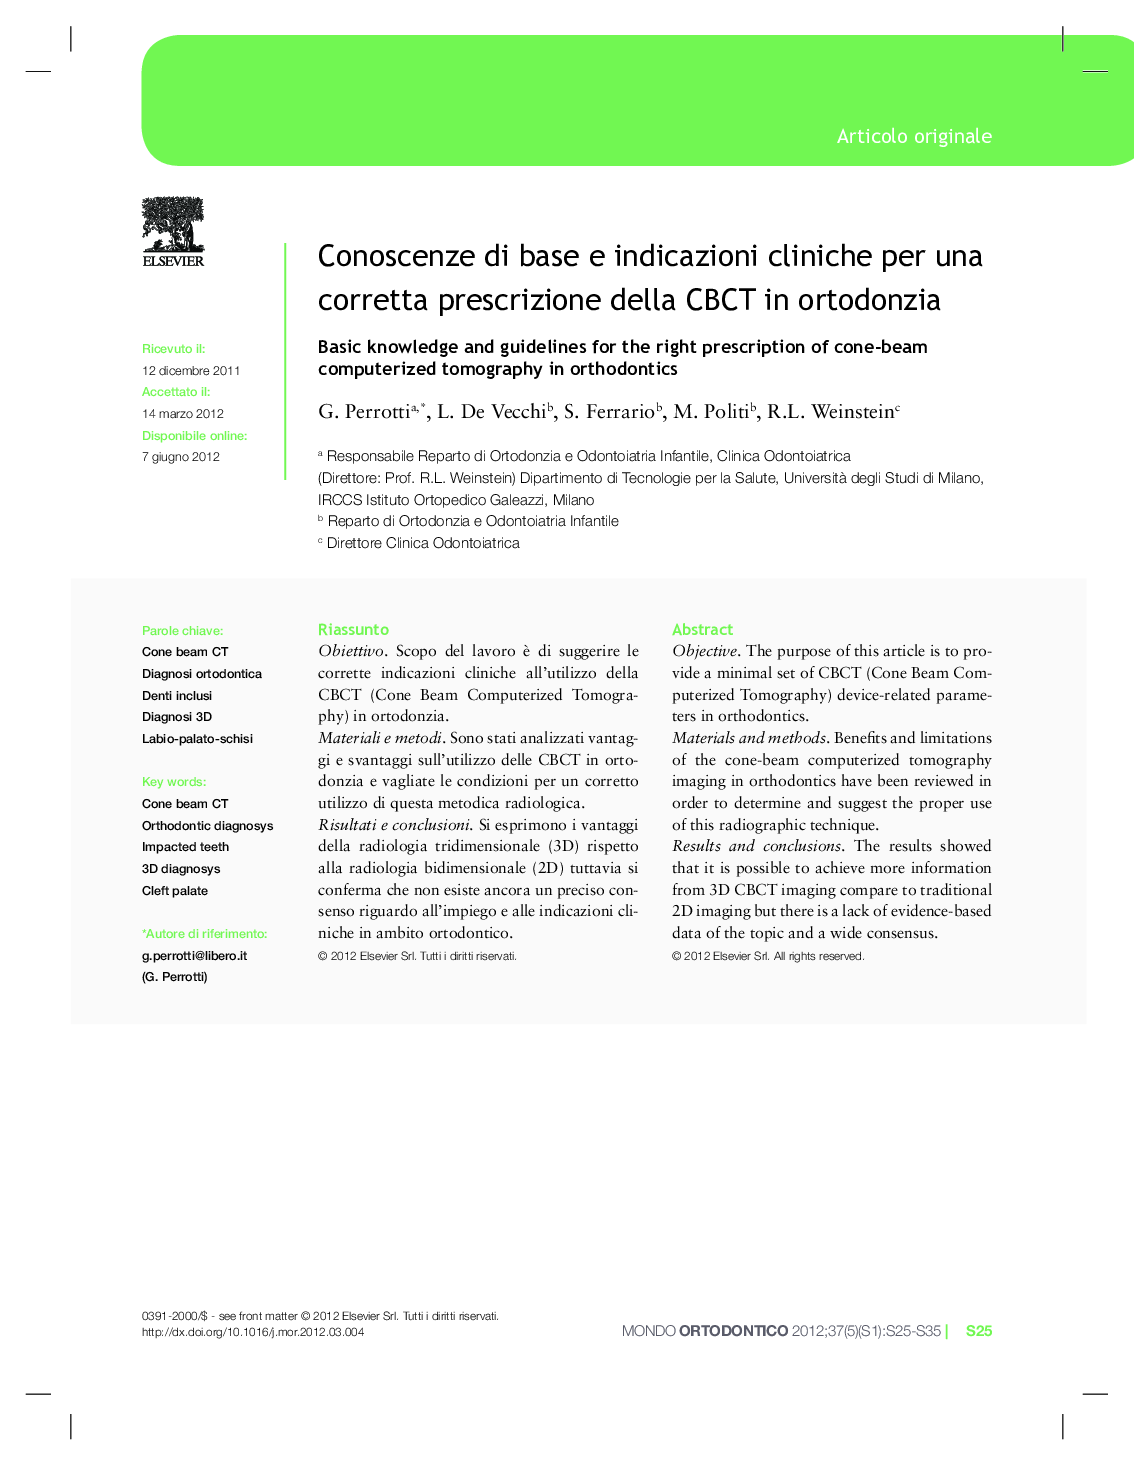 Conoscenze di base e indicazioni cliniche per una corretta prescrizione della CBCT in ortodonzia